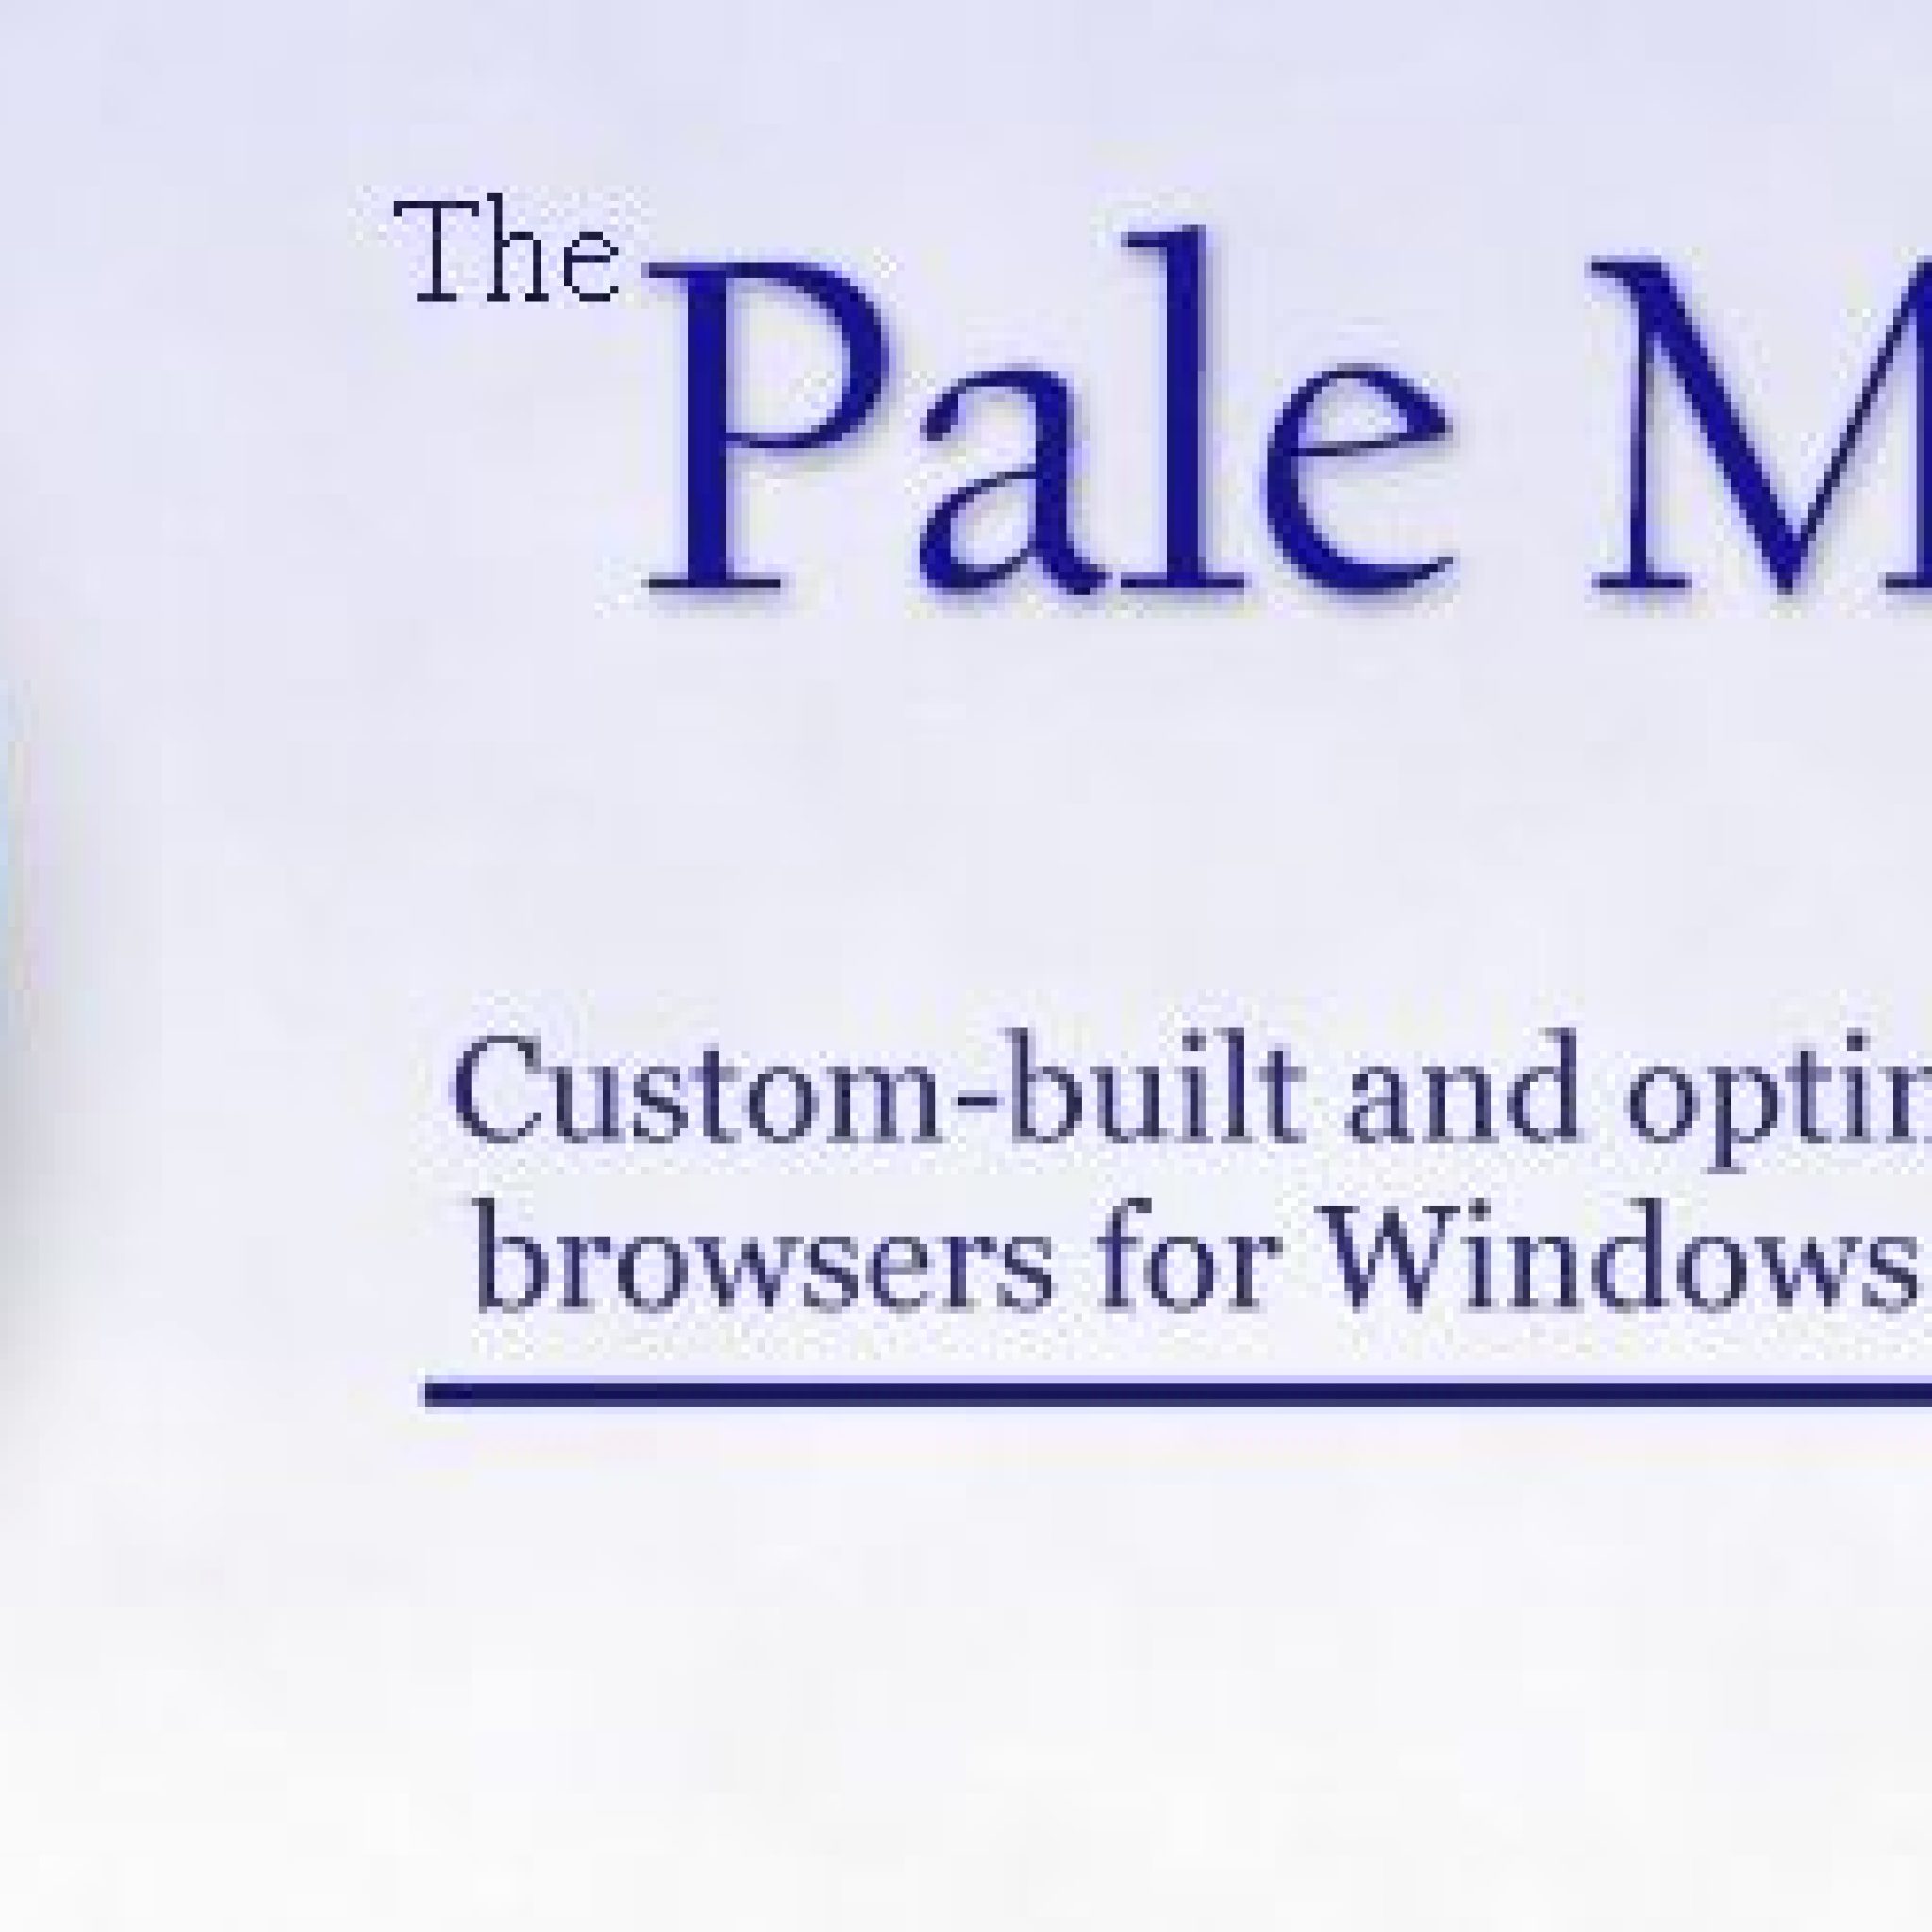 Pale Moon: Un Navegador Web Basado En Firefox Pero Más Rápido